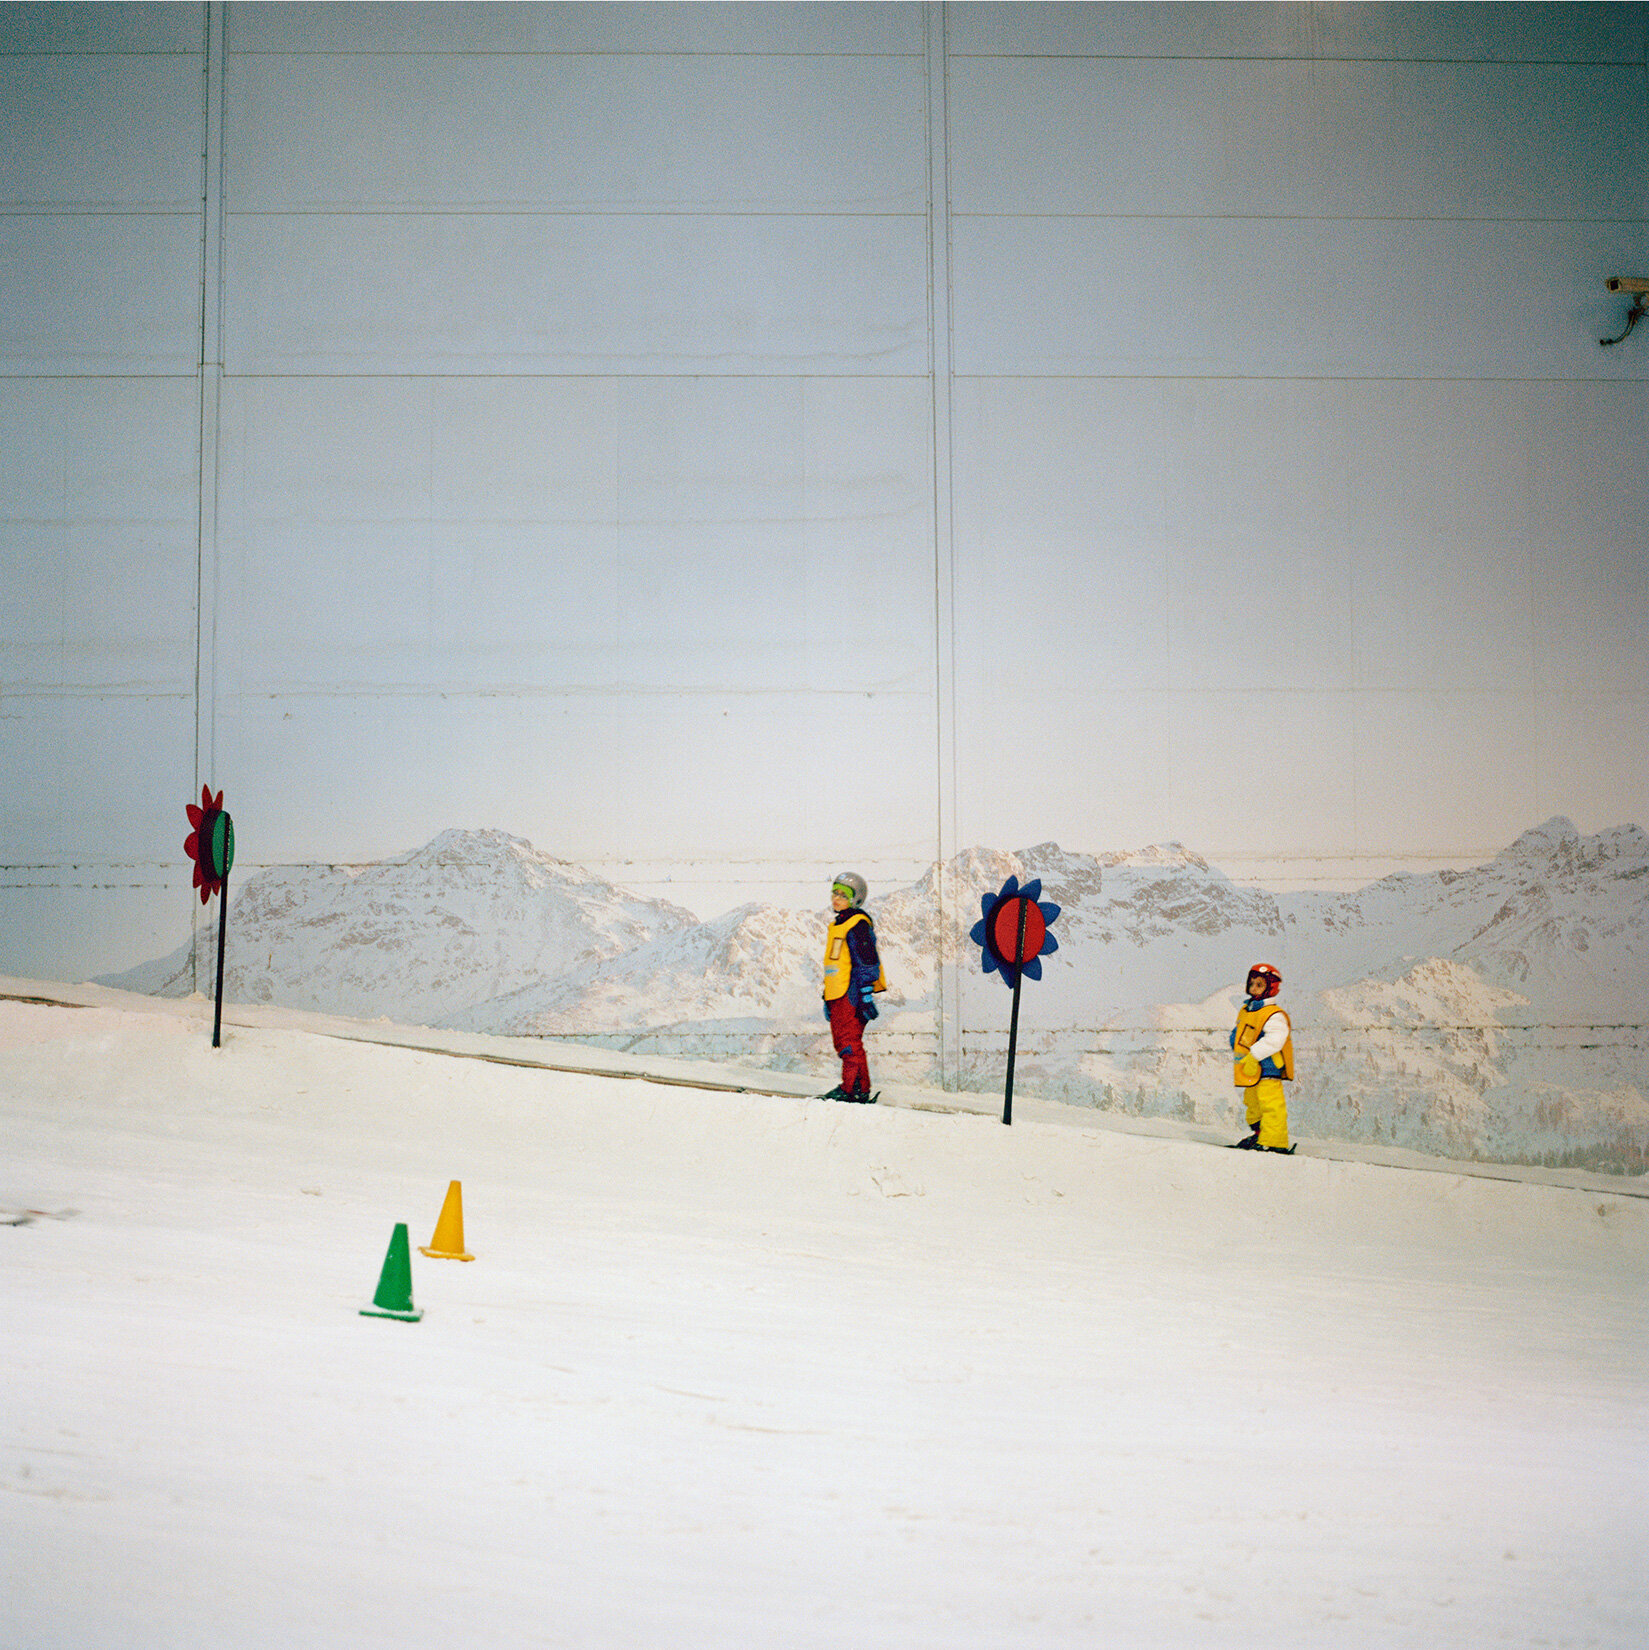  OLIVIA ARTHUR/MAGNUM PHOTOS Kids at Ski Dubai, Dubai. U.A.E. 2013. 